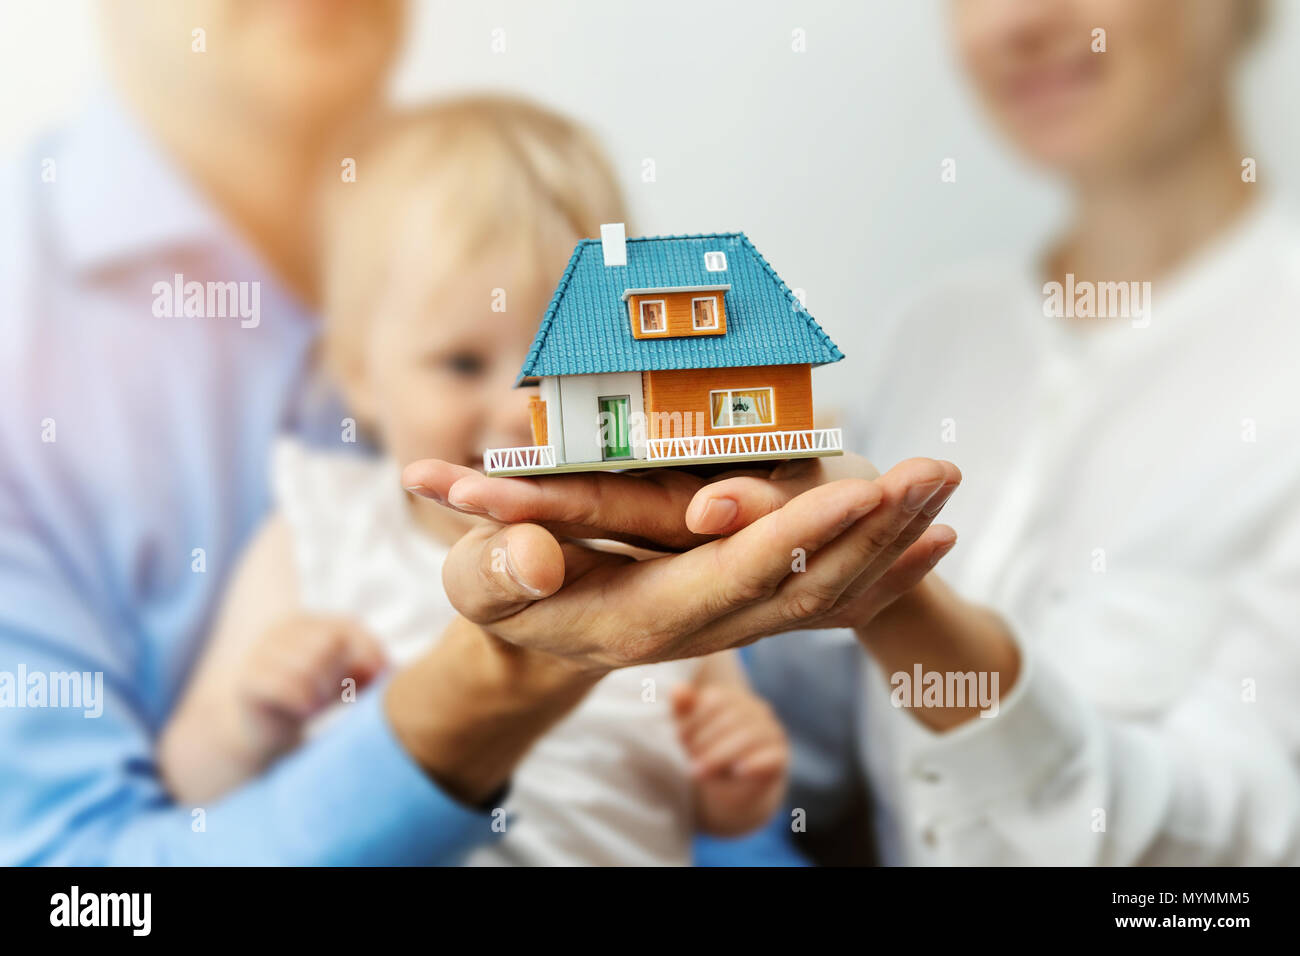 Neue home Konzept - junge Familie mit Dream House Modell in den Händen Stockfoto